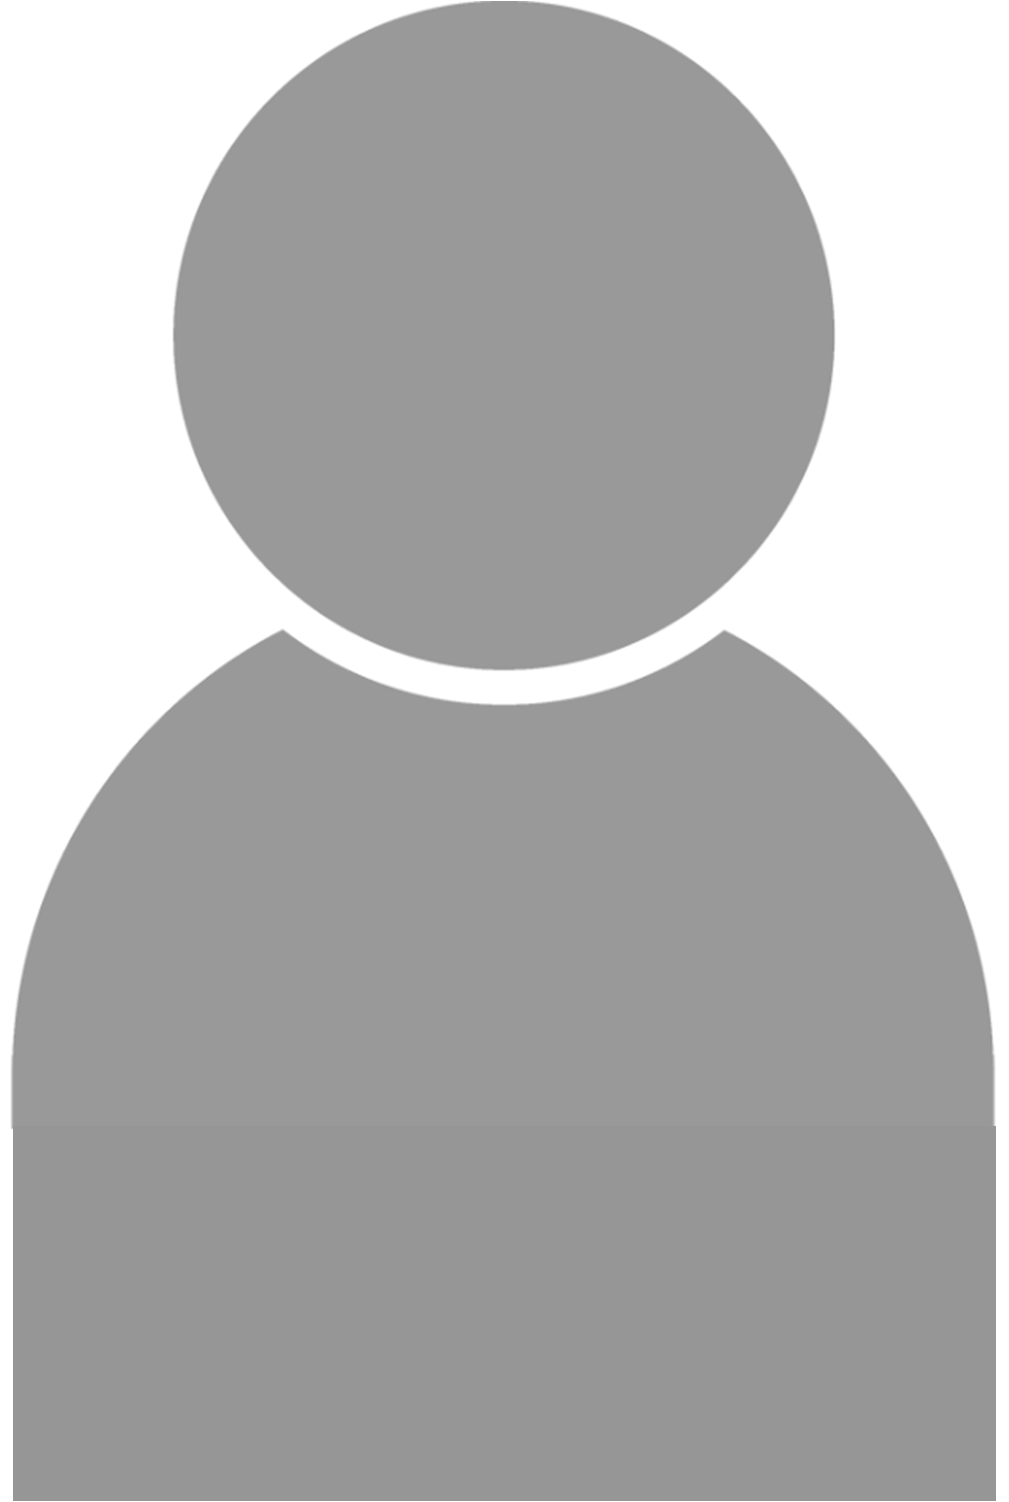 Profile picture of generic silouette